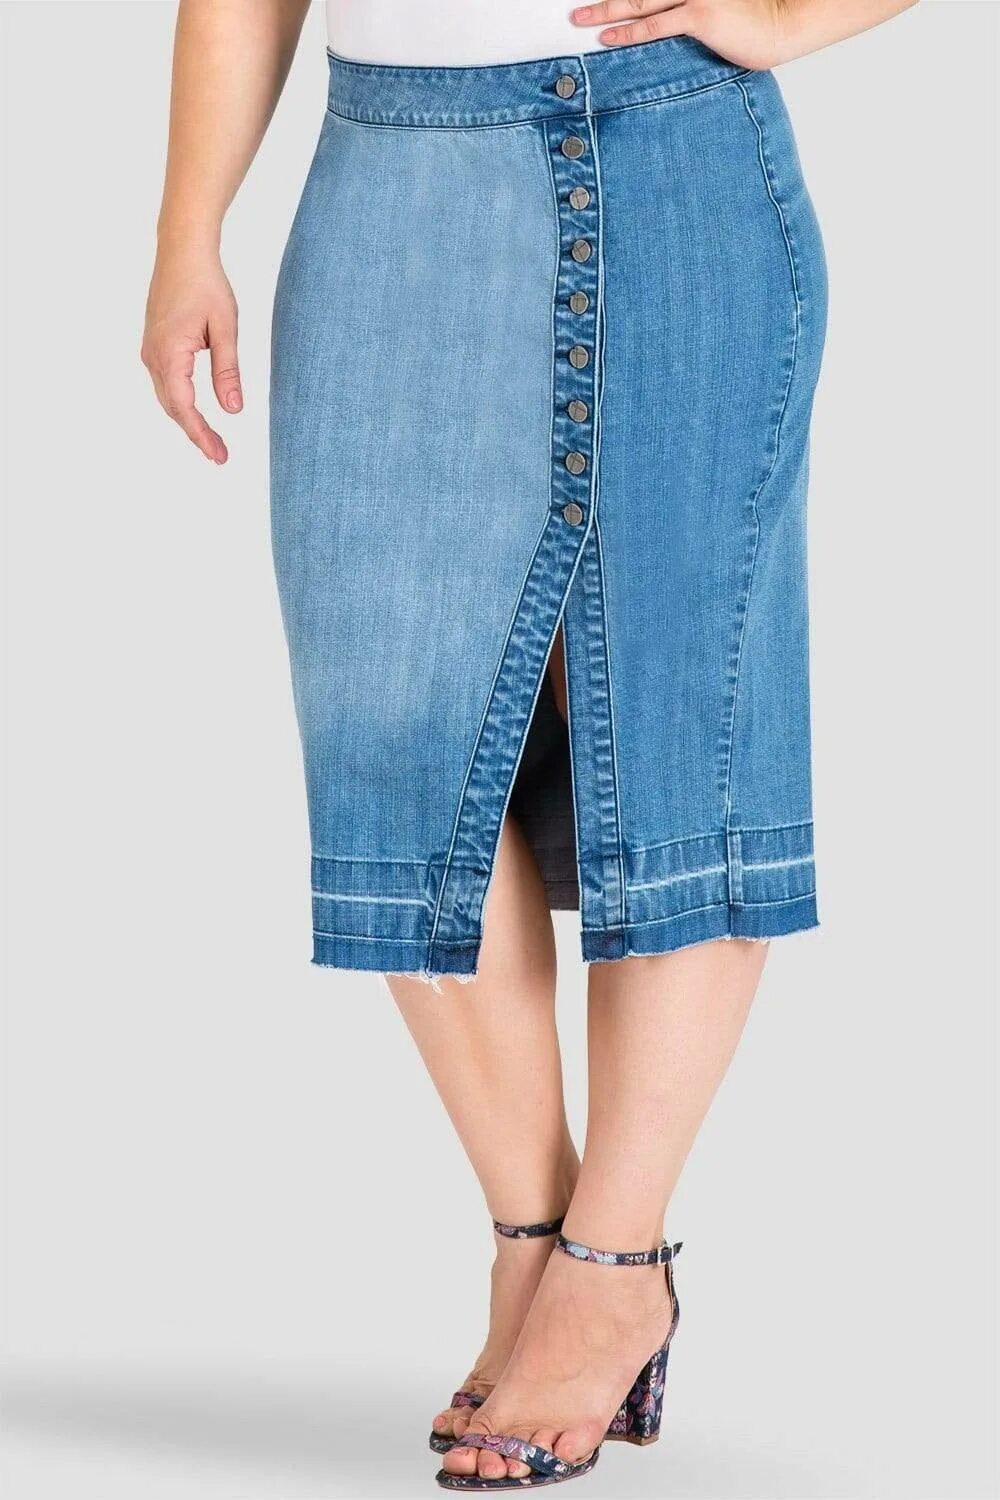 Юбка джинсовая 2021 плюс сайз. Юбка джинсовая макси плюс сайз. Джинсовая юбка миди плюс сайз. Остин джинсовая юбка миди.